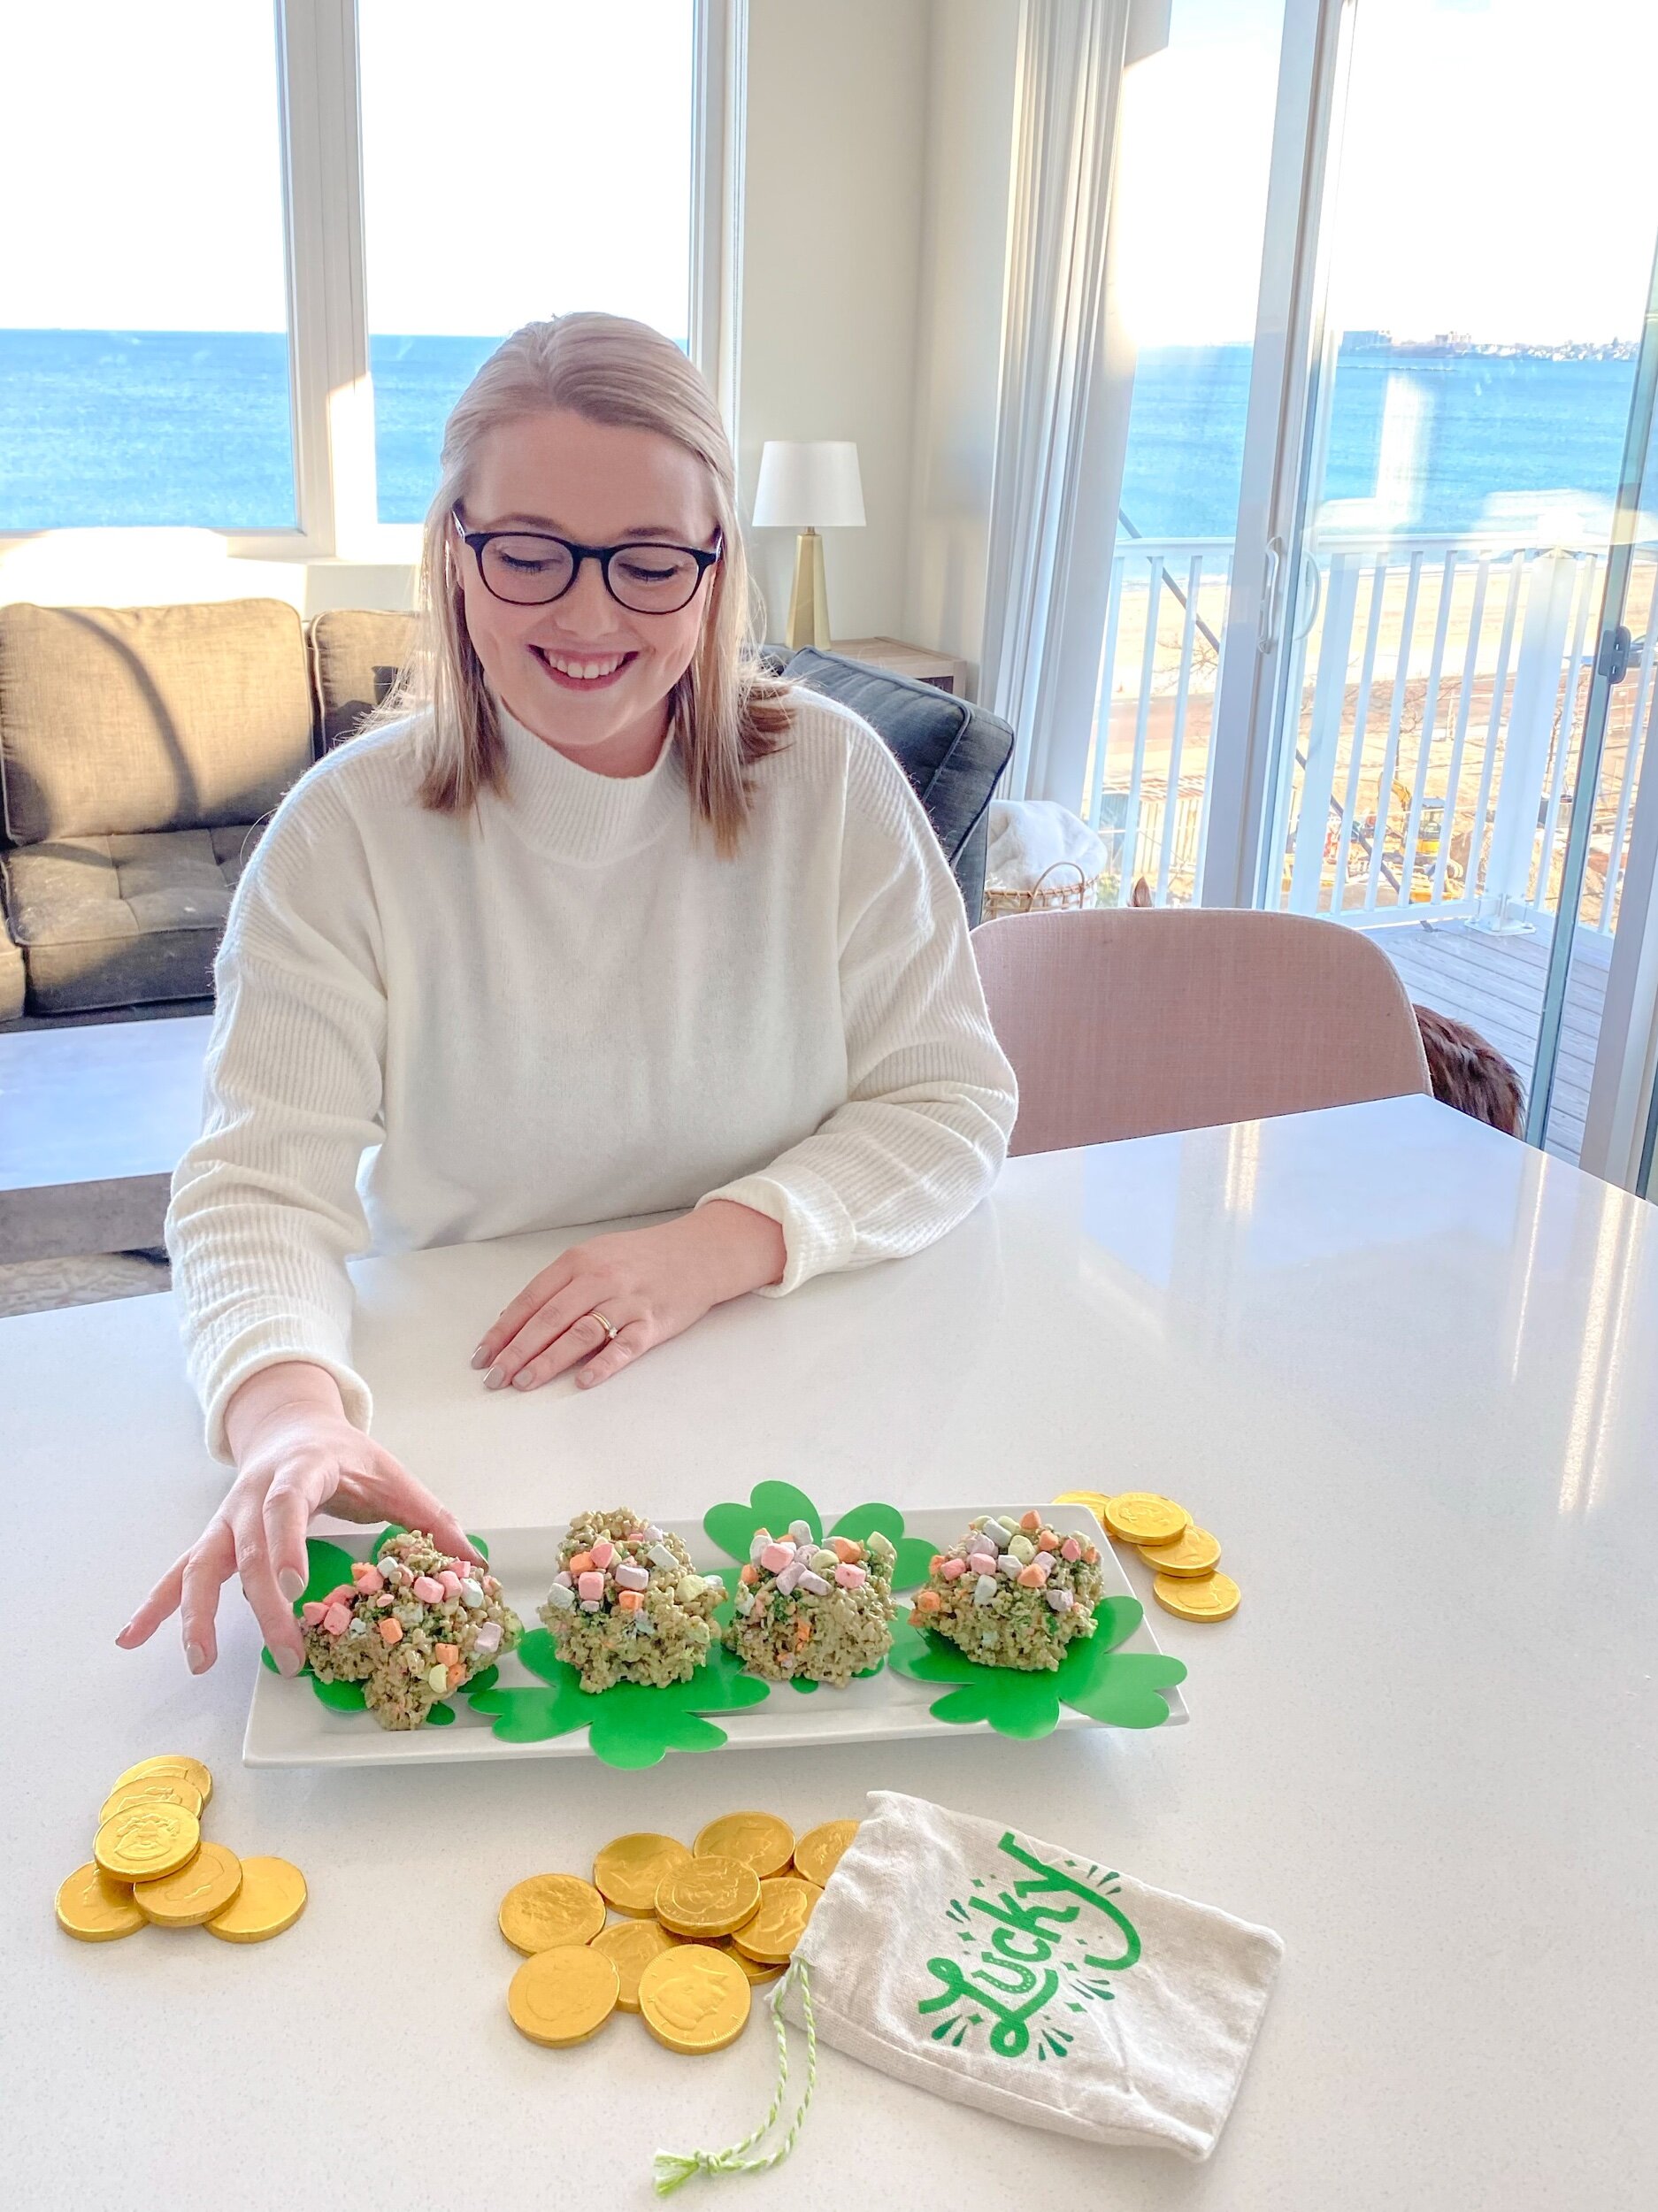 Taryn Into Travel Food Recipes Lucky Charms Rice Krispy Treats St Patricks Day Treats Blog Snacks